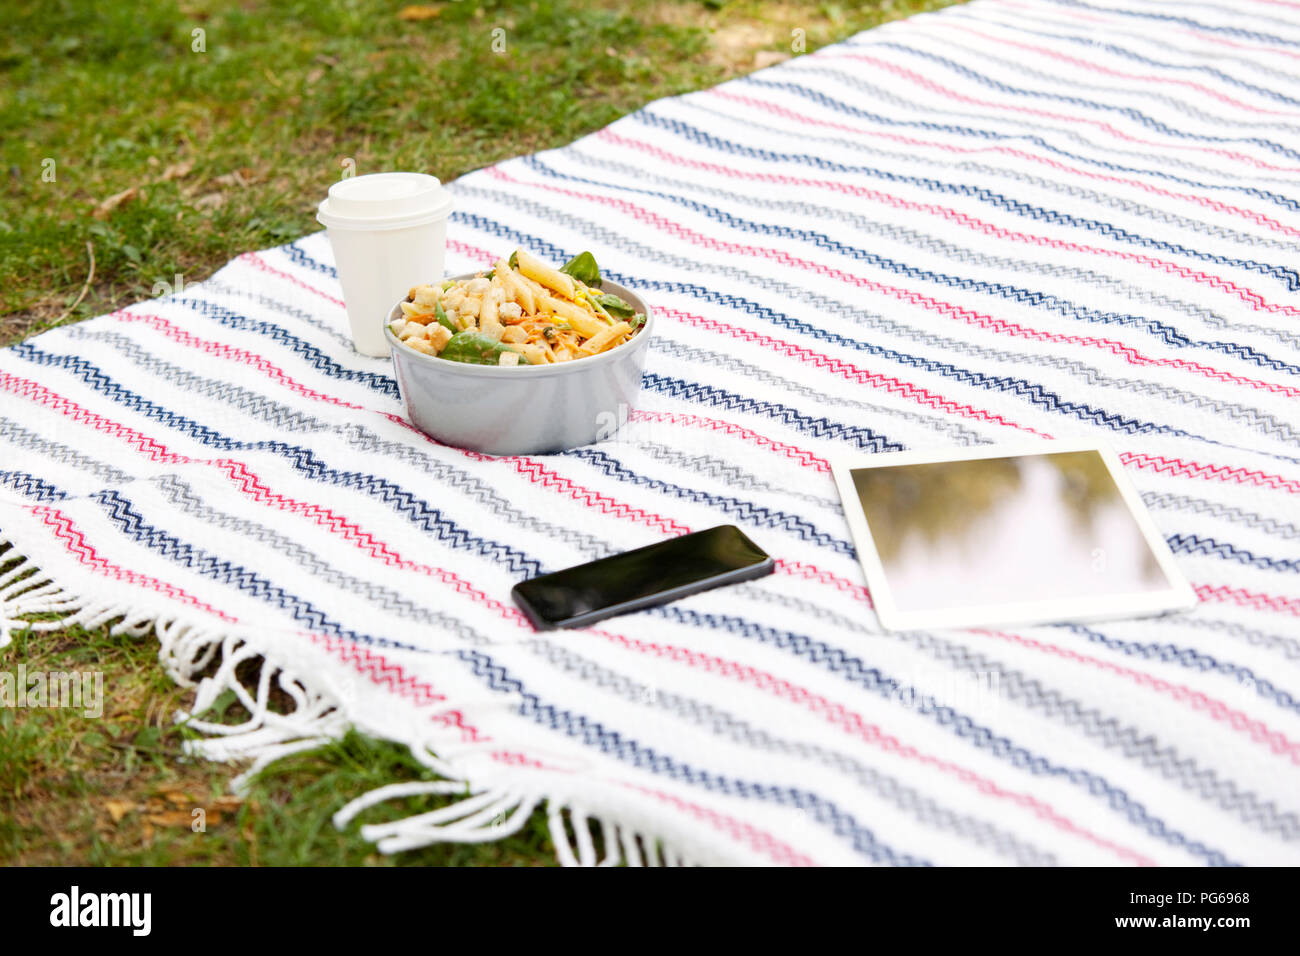 Handy, Tablet, Kaffee trinken gehen und eine Schüssel Nudelsalat auf Decke in einem Park Stockfoto